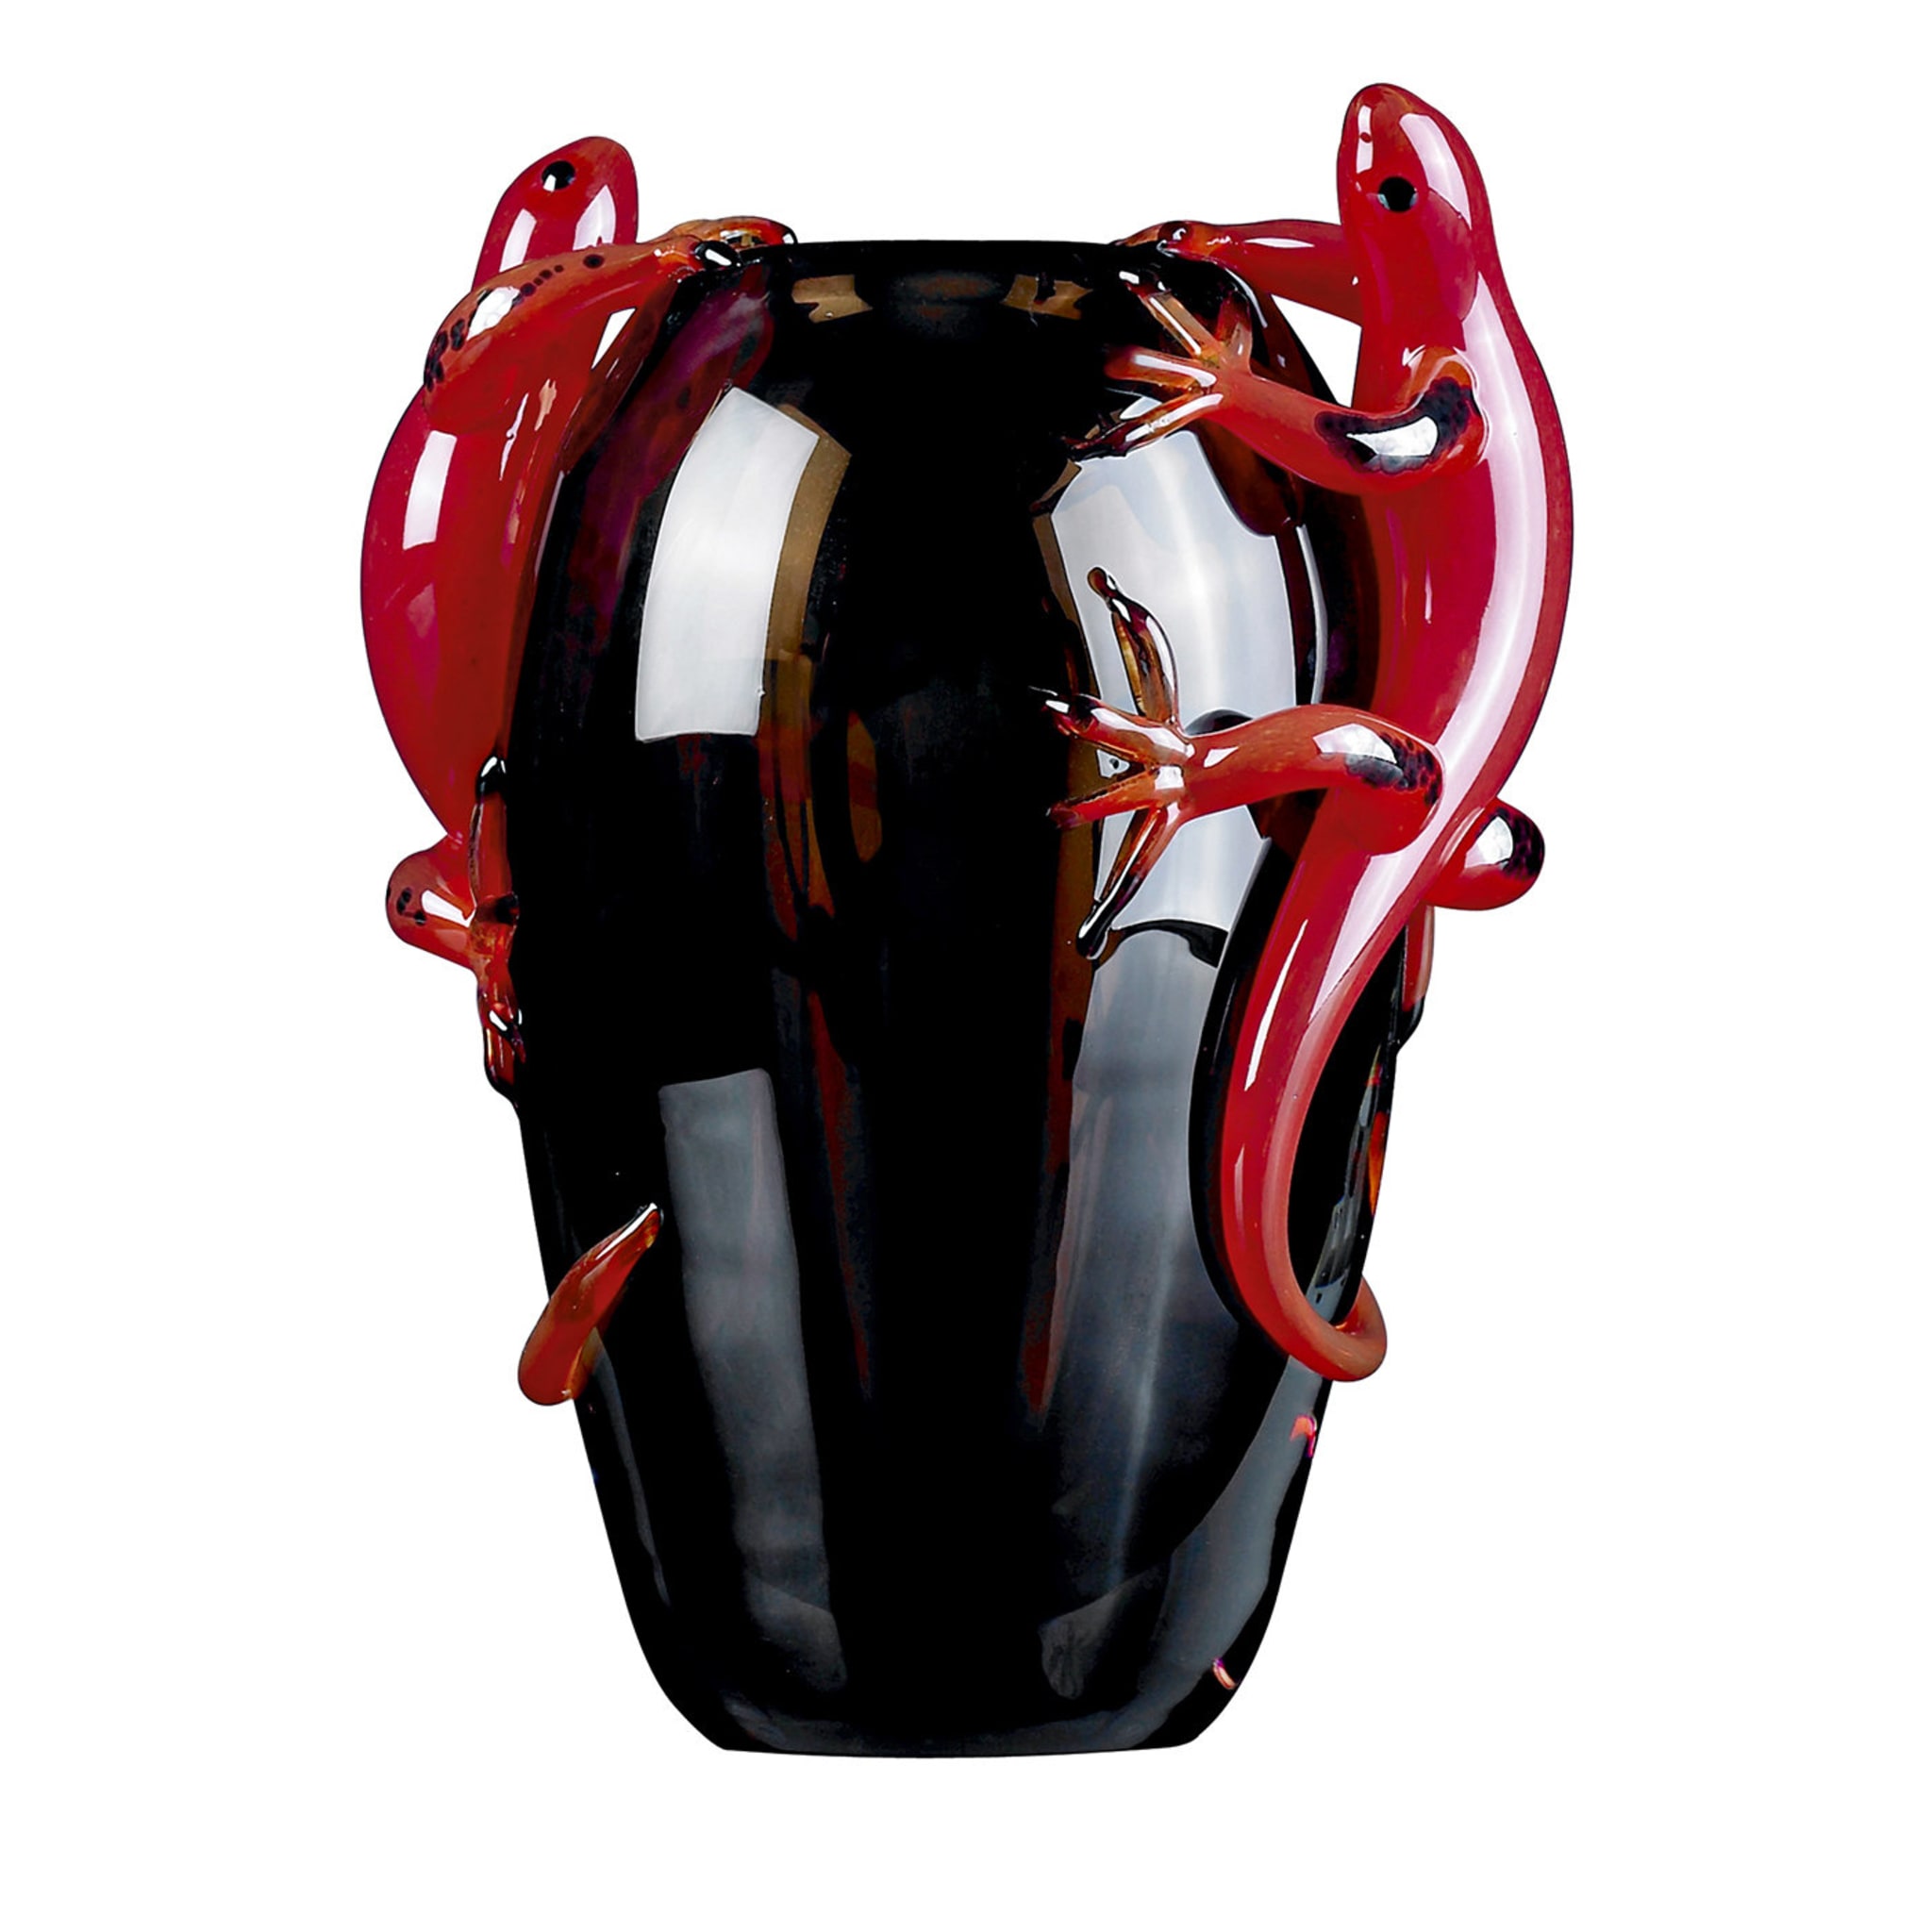 Petit vase noir avec 2 geckos rouges - Vue principale